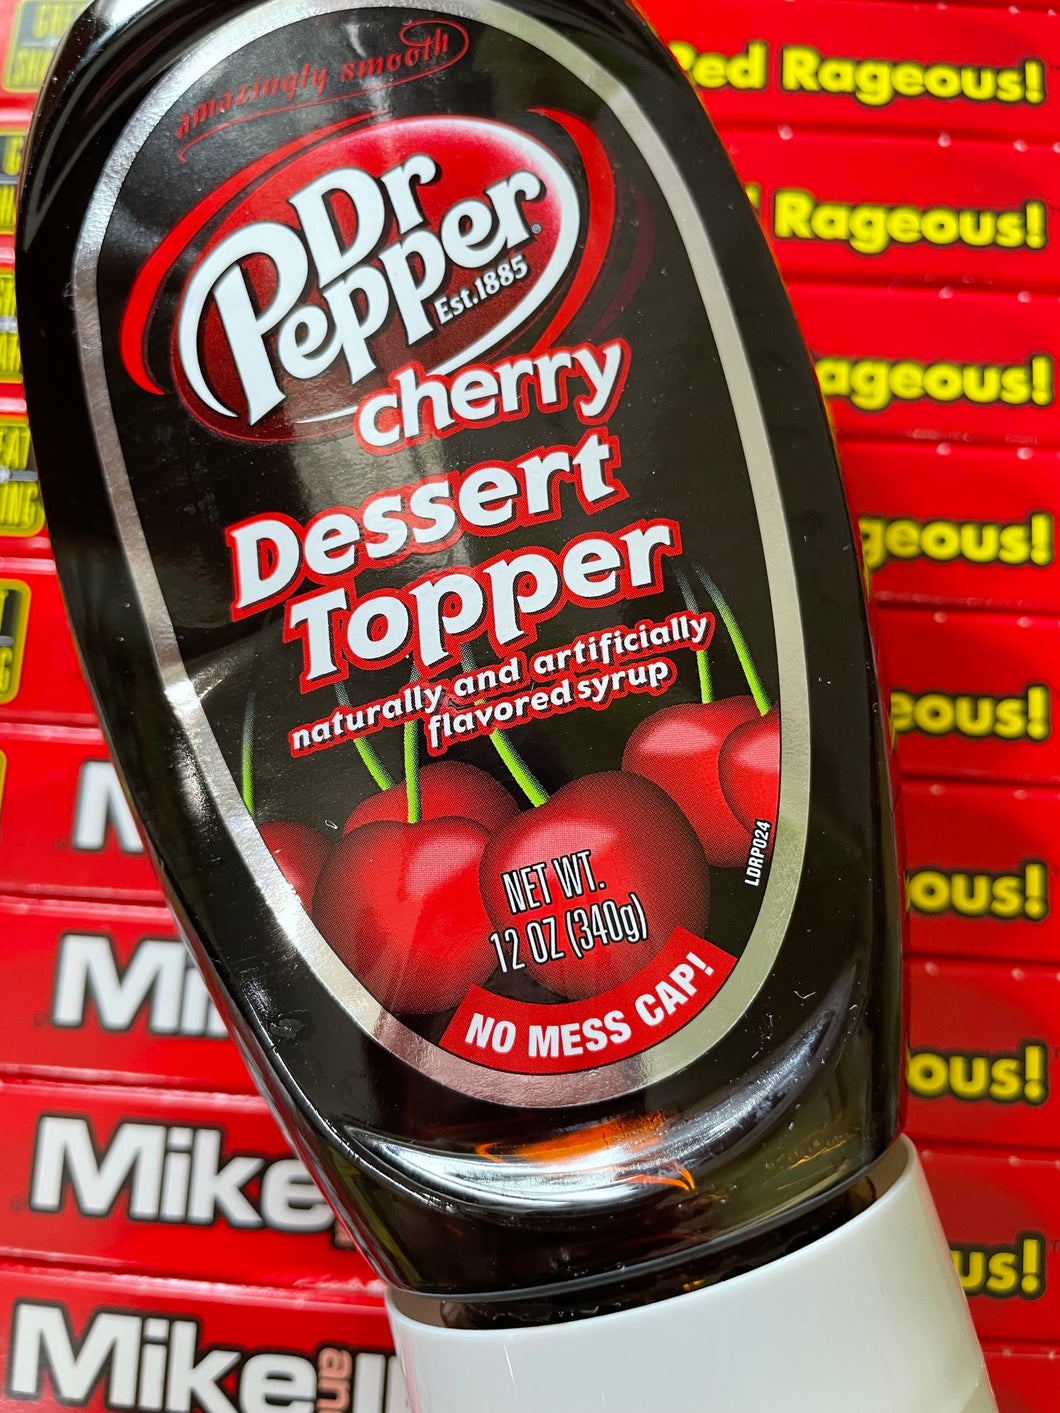 Dessert Topper, Dr. Pepper, Cherry